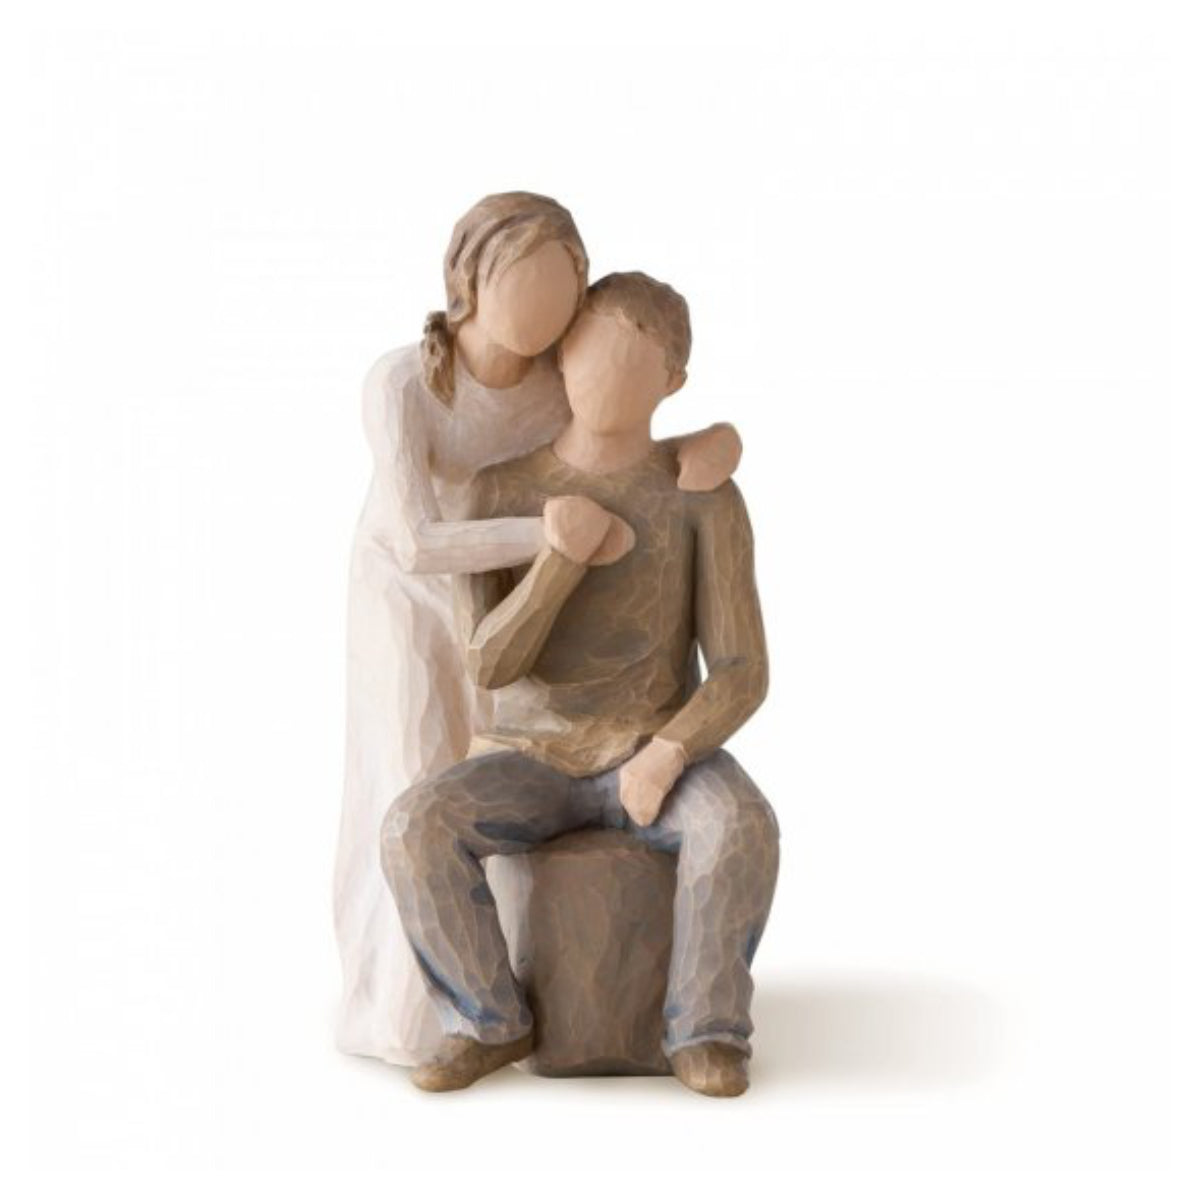 Willow Tree é uma linha íntima de estatuetas criada pela artista Susan Lordi representativas de: amor, proximidade, cura, coragem, esperança, família entre outras emoções que encontramos na vida.  Envolvida numa caixa com a mensagem: 'Todos os dias, a construir o nosso amor'.